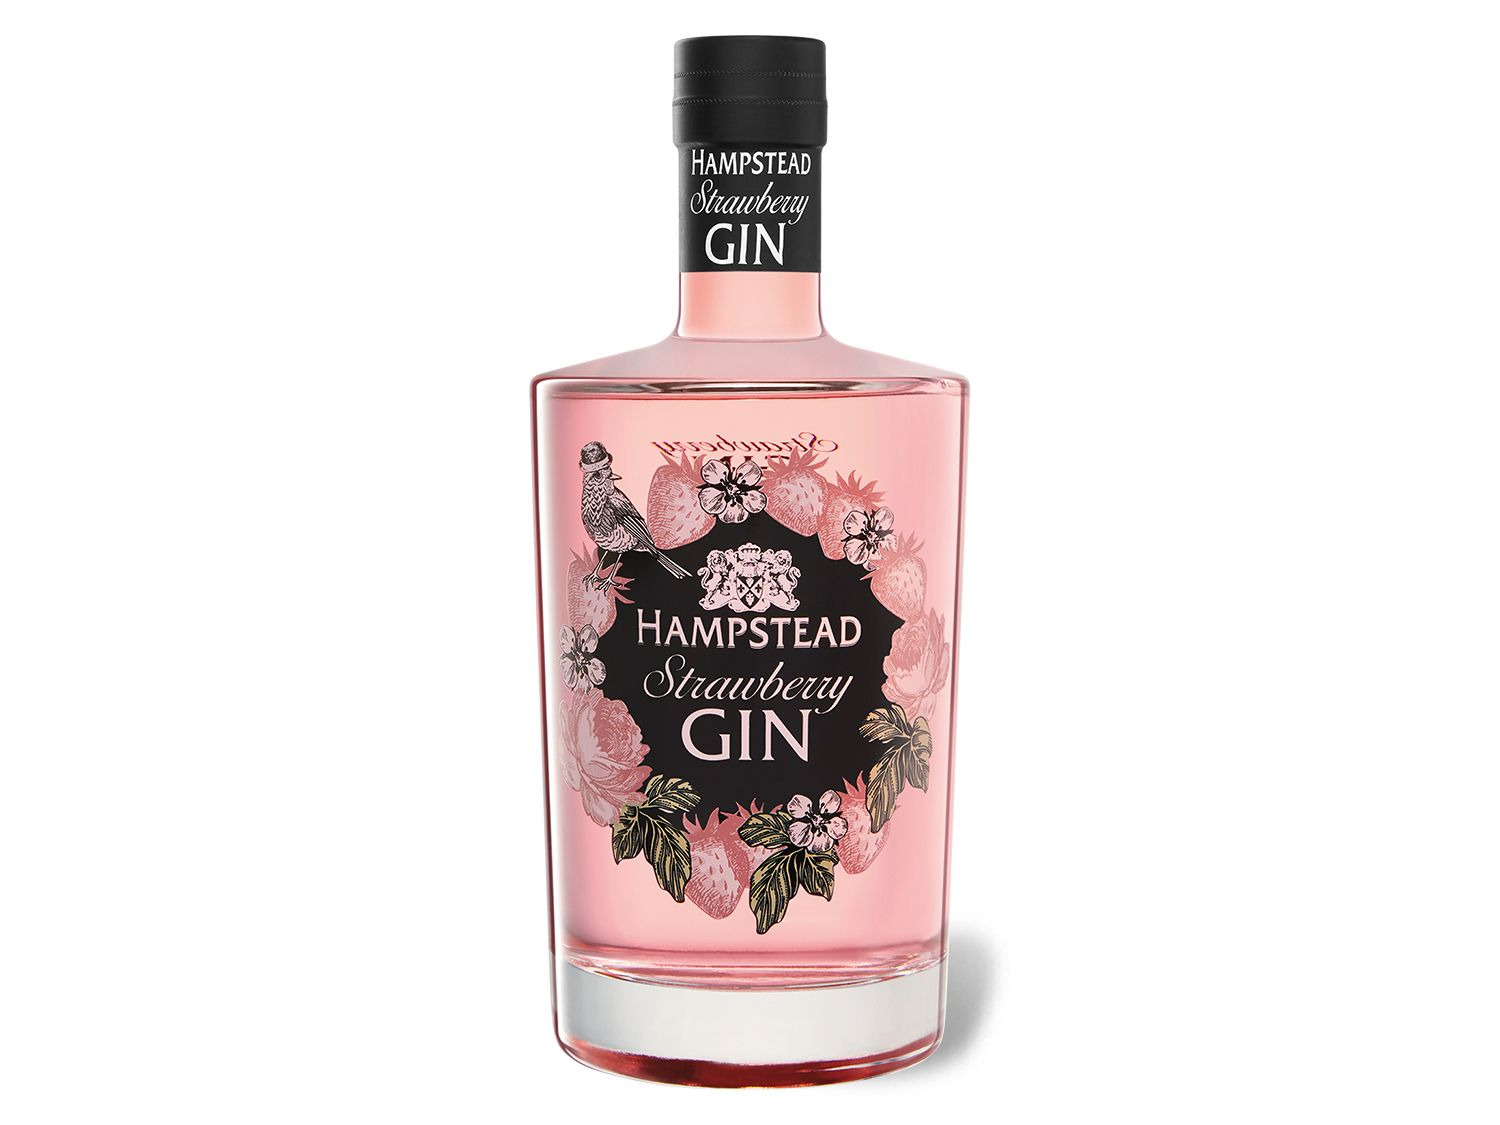 Hampstead Strawberry Gin 37,5% Vol online kaufen | LIDL